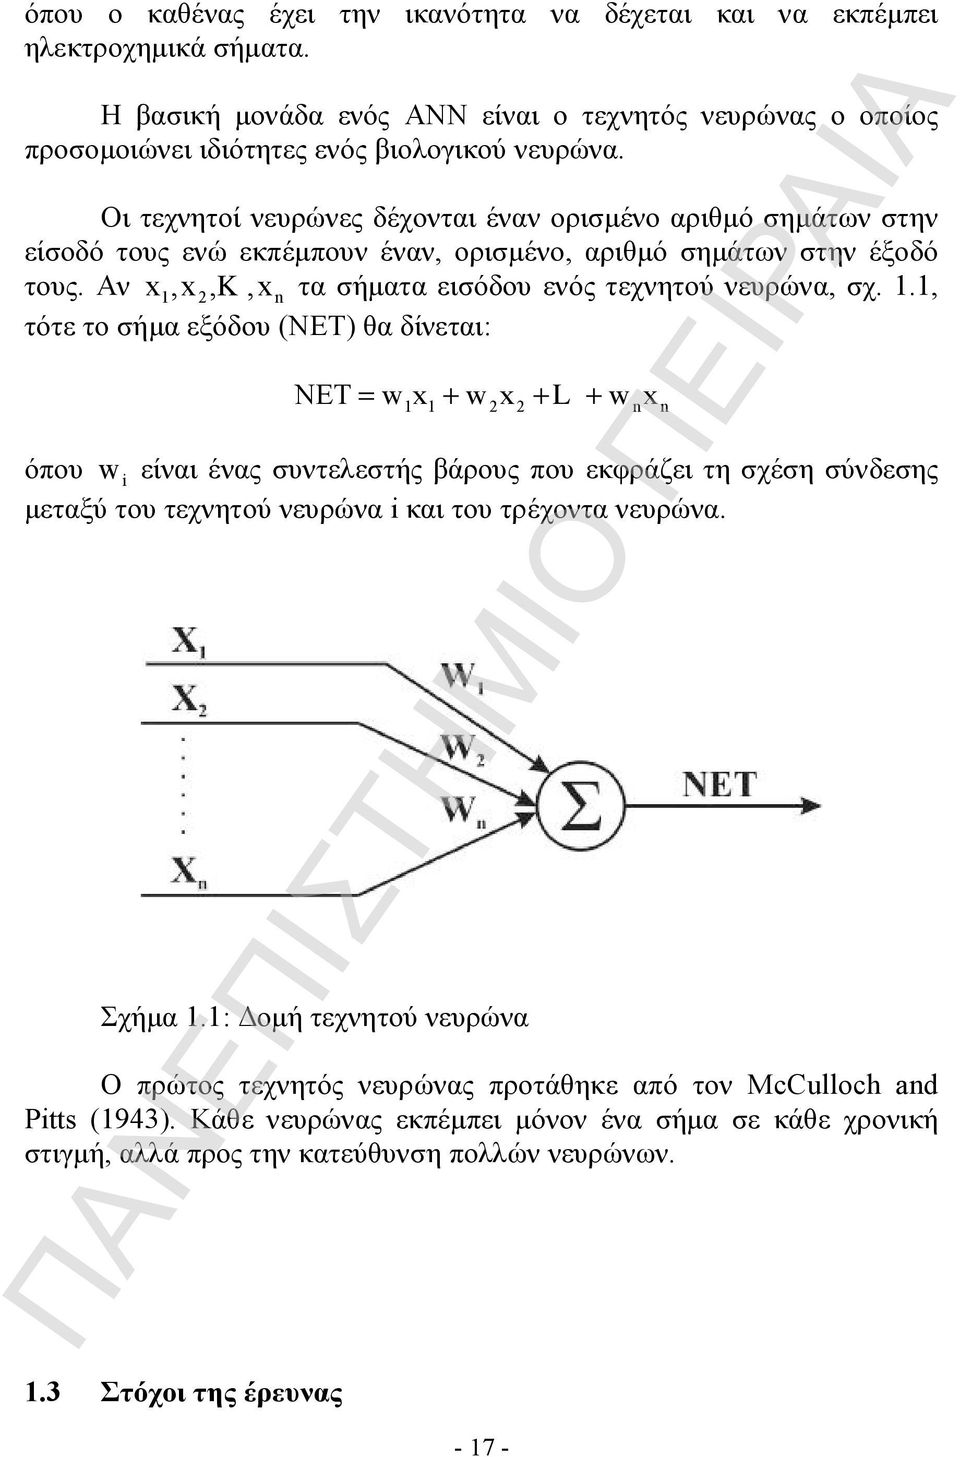 1.1, τότε το σήμα εξόδου (ΝΕΤ) θα δίνεται: NET= wx + wx + L + wx 1 1 2 2 n n όπου w i είναι ένας συντελεστής βάρους που εκφράζει τη σχέση σύνδεσης μεταξύ του τεχνητού νευρώνα i και του τρέχοντα